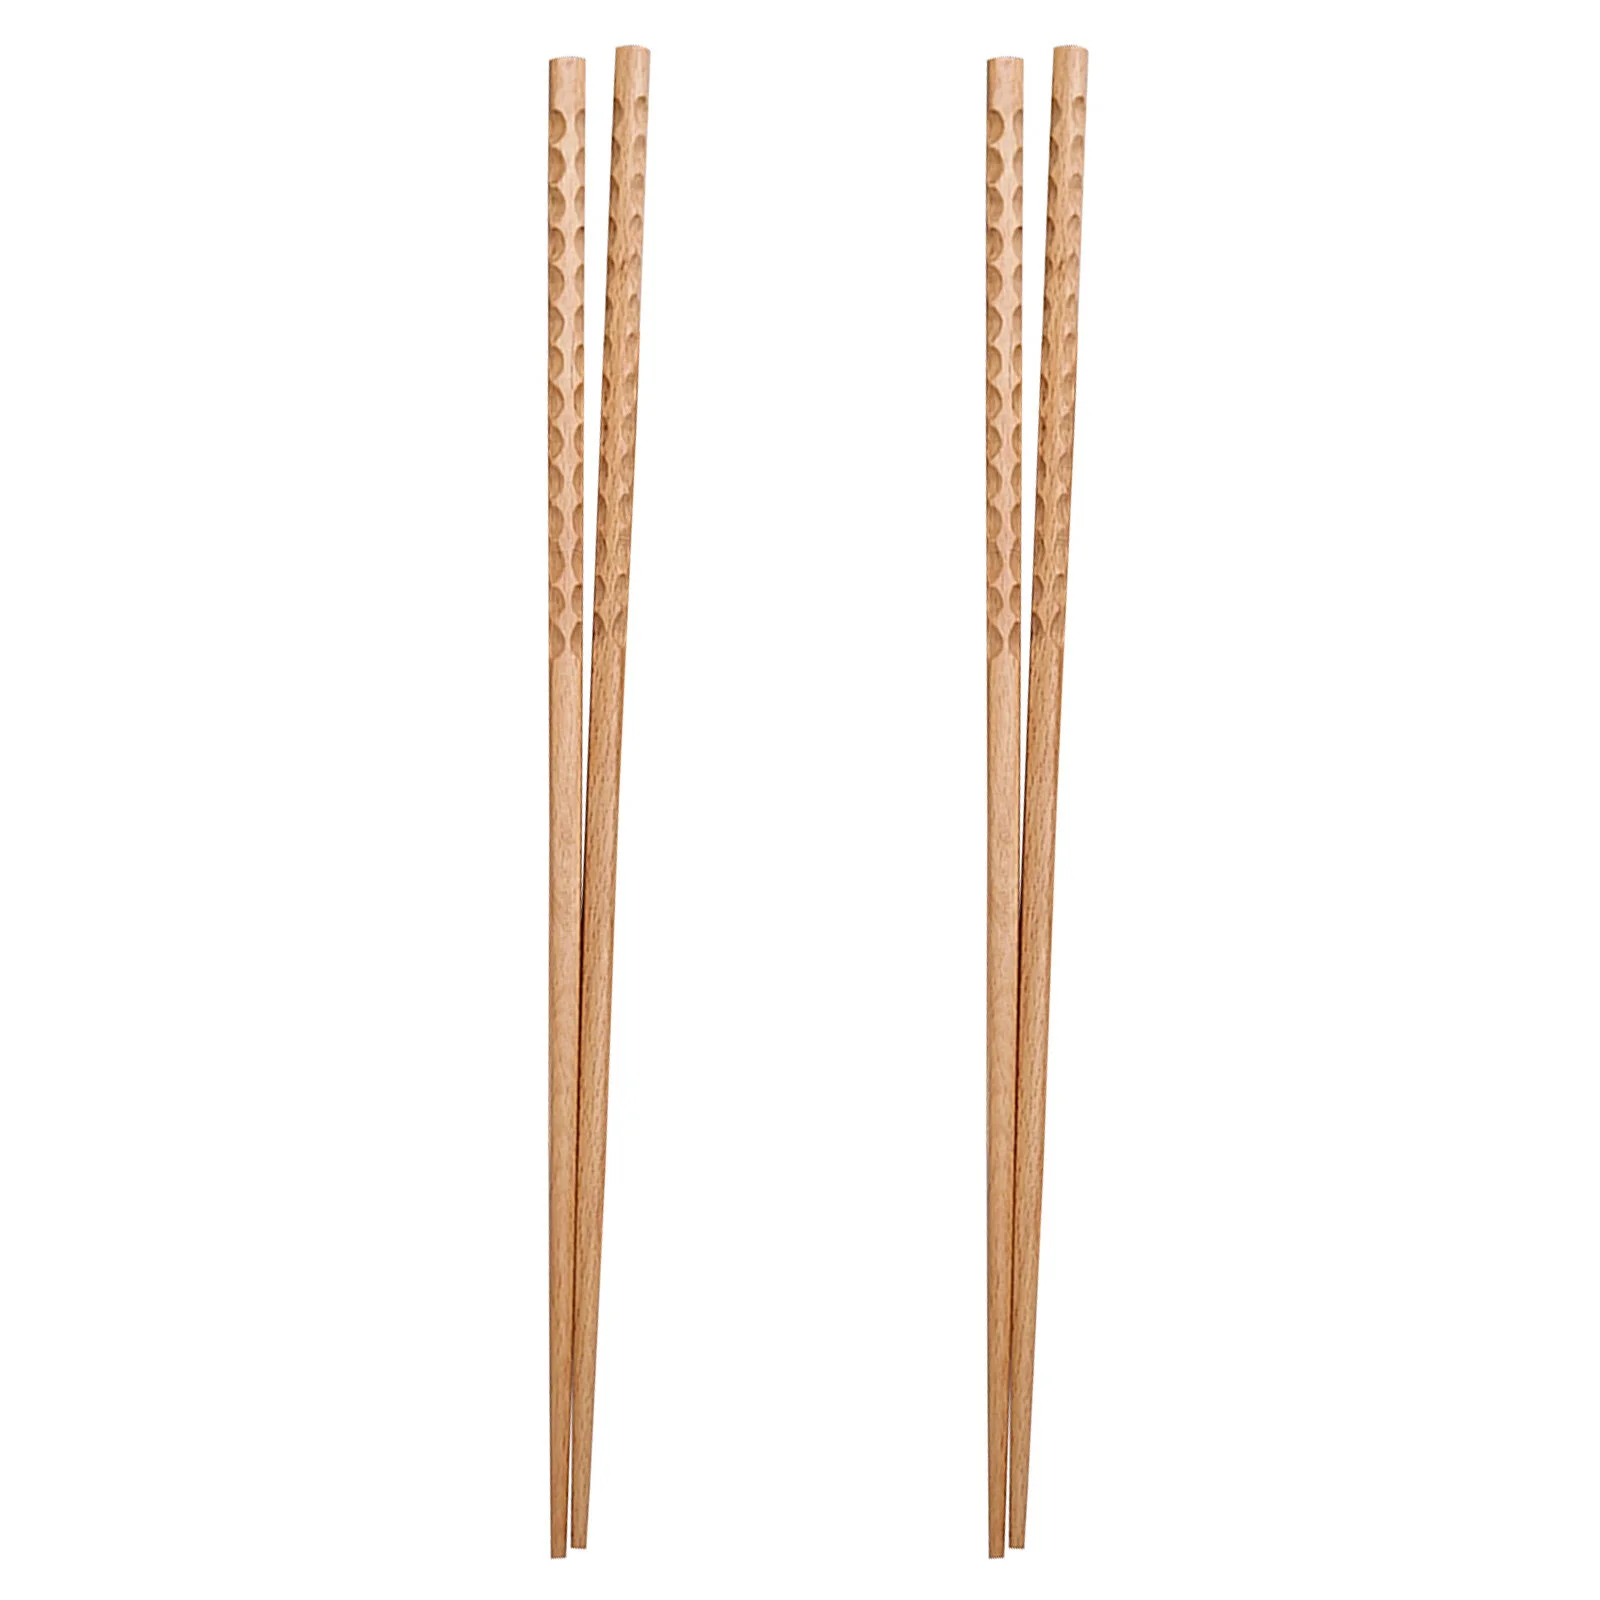 

2 Pairs Wood Hot Pot Chopsticks Lightweight Long Lengthen Chopsticks Frying Noodle Chafing Dish Chopsticks for Home Restaurant